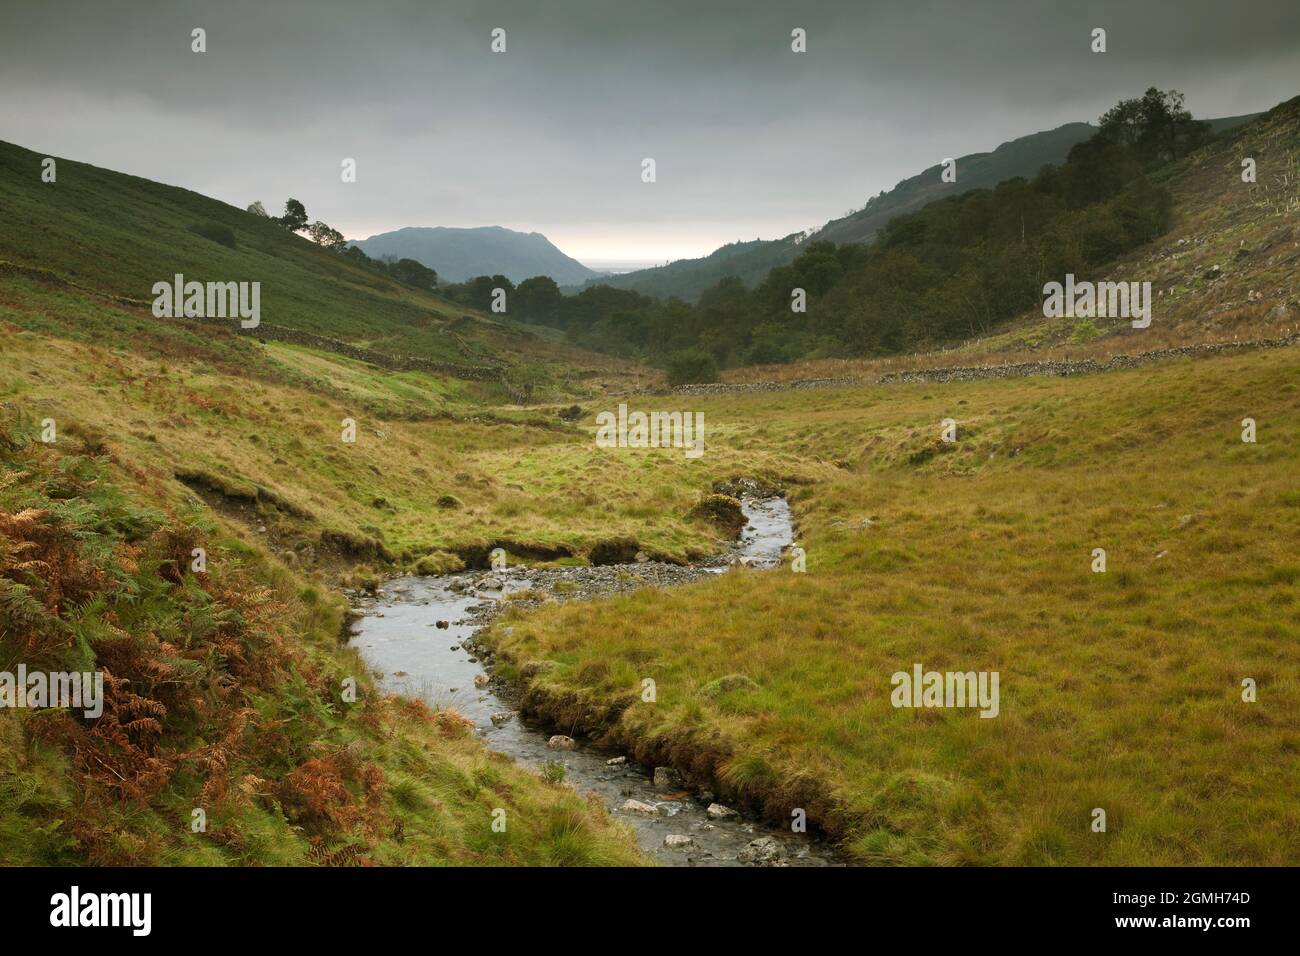 River Mite in Miterdale, English Lake District, UK Stock Photo